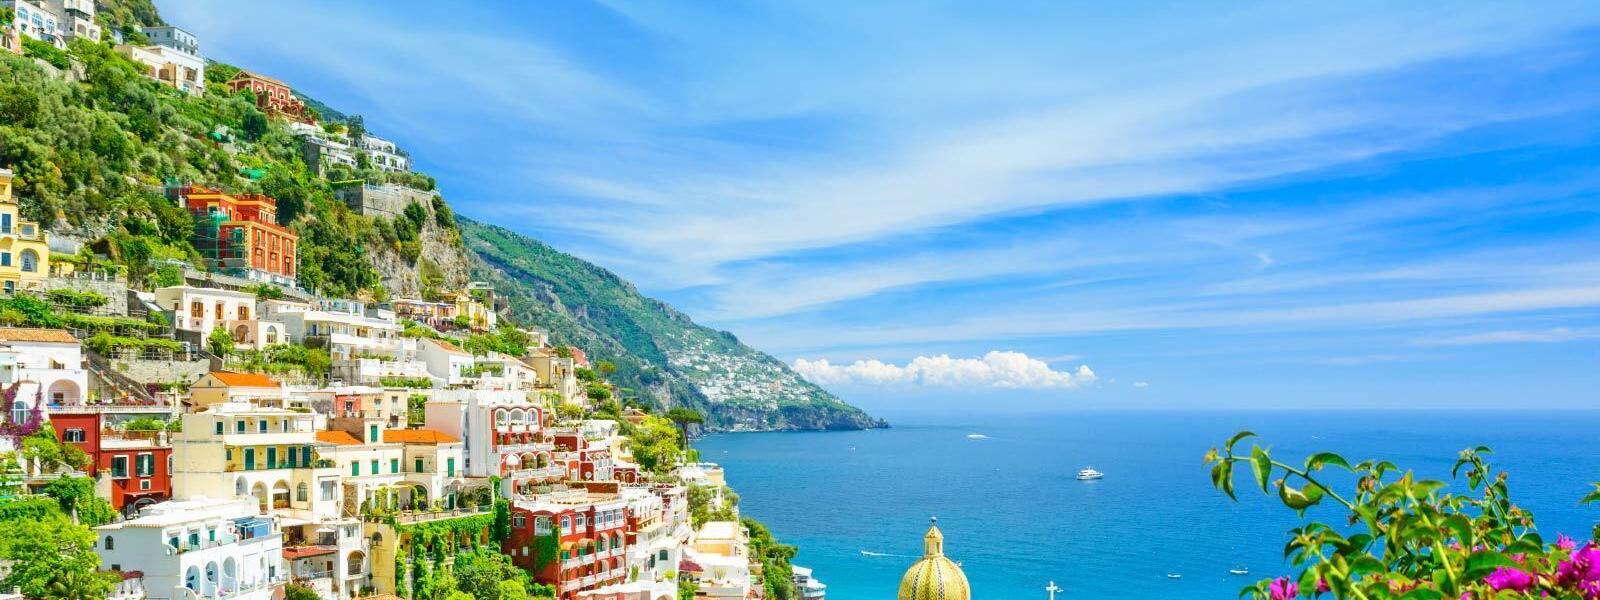 Ferienwohnungen und Ferienhäuser in Riva del Garda - atraveo